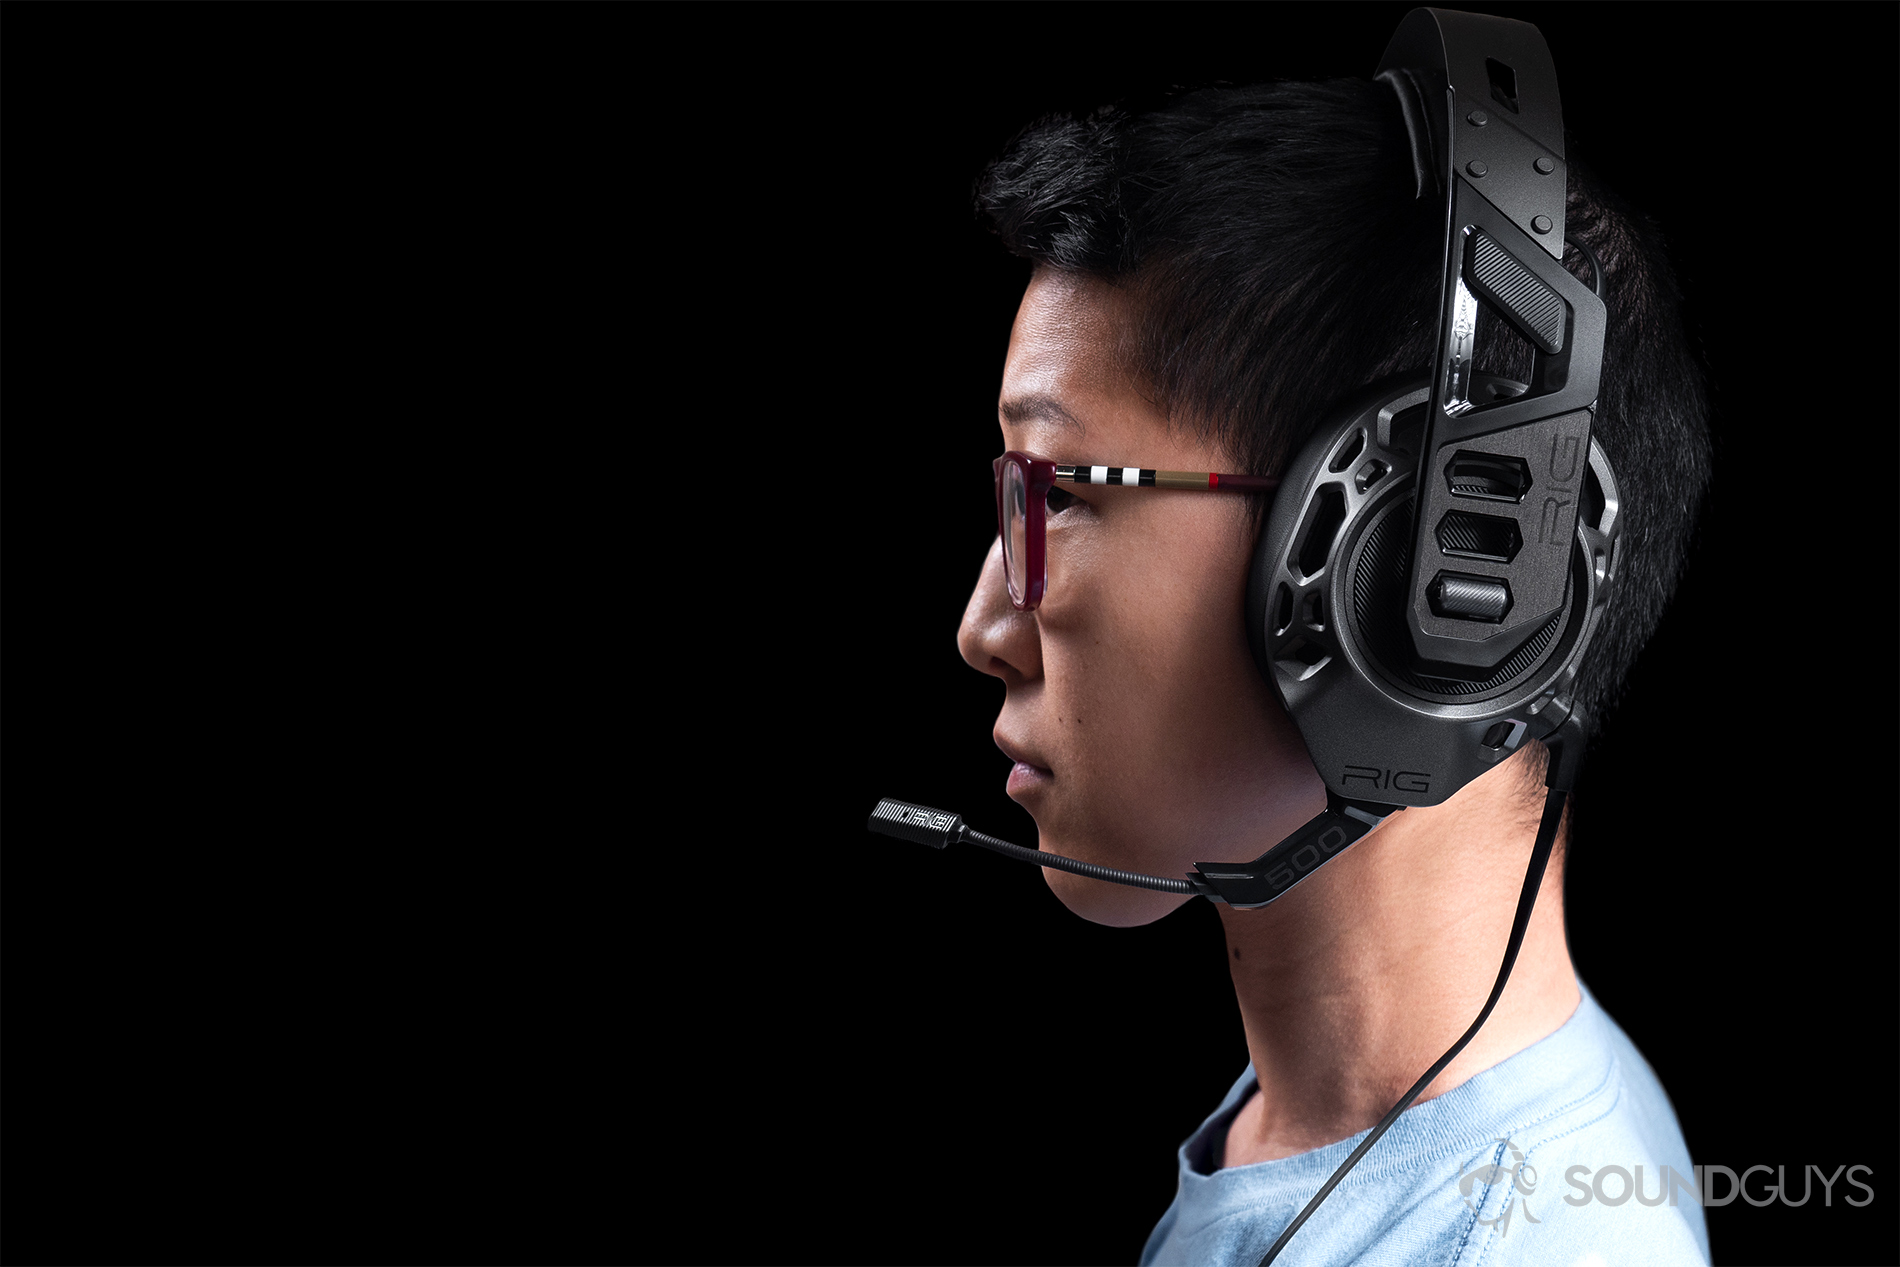 HyperX gaming headset buying guide - SoundGuys